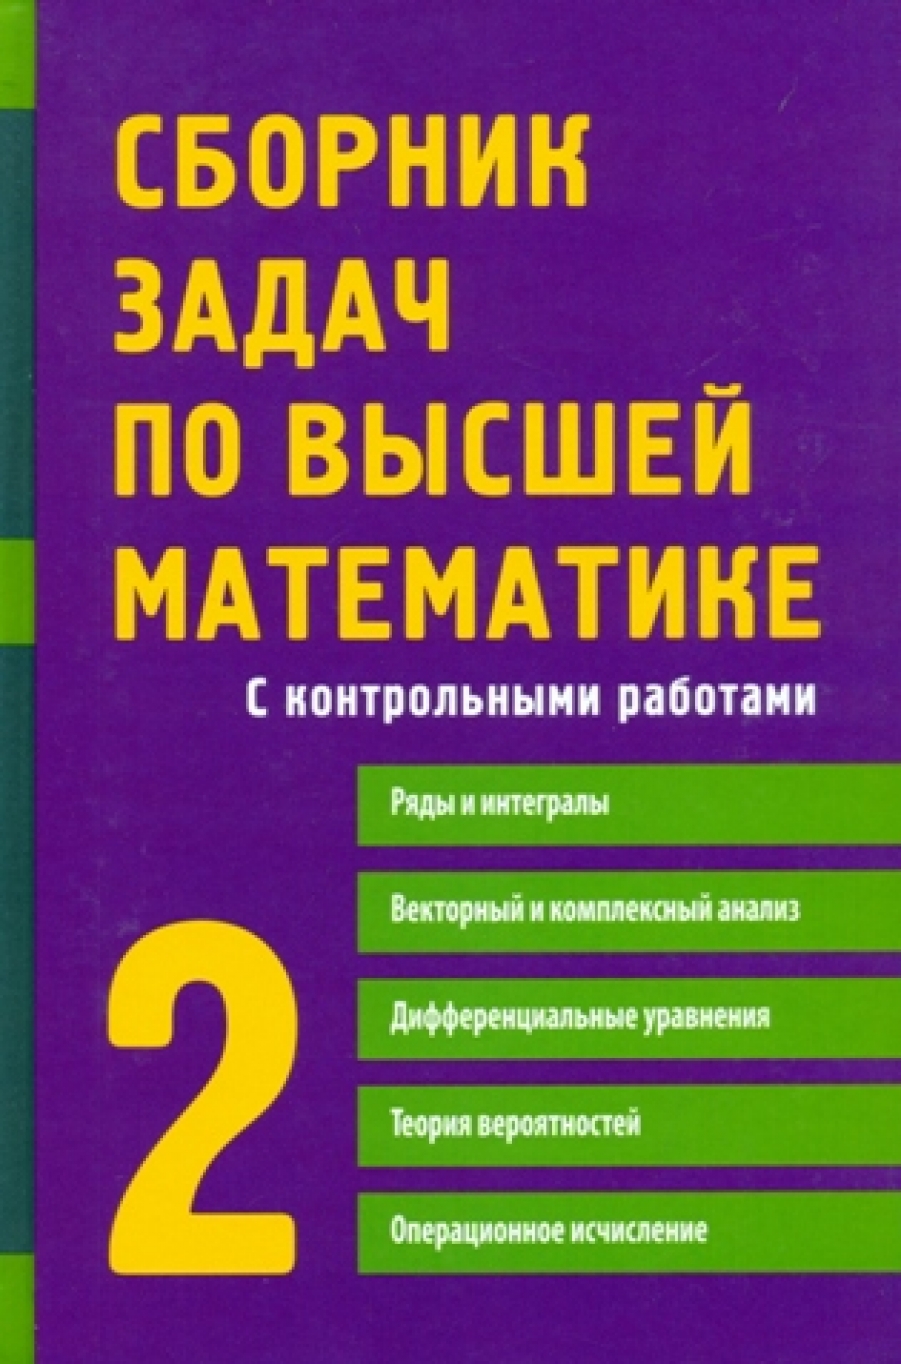 Письменный Д.Т., Лунгу К.Н., Норин В.П. Сборник задач по высшей математике 